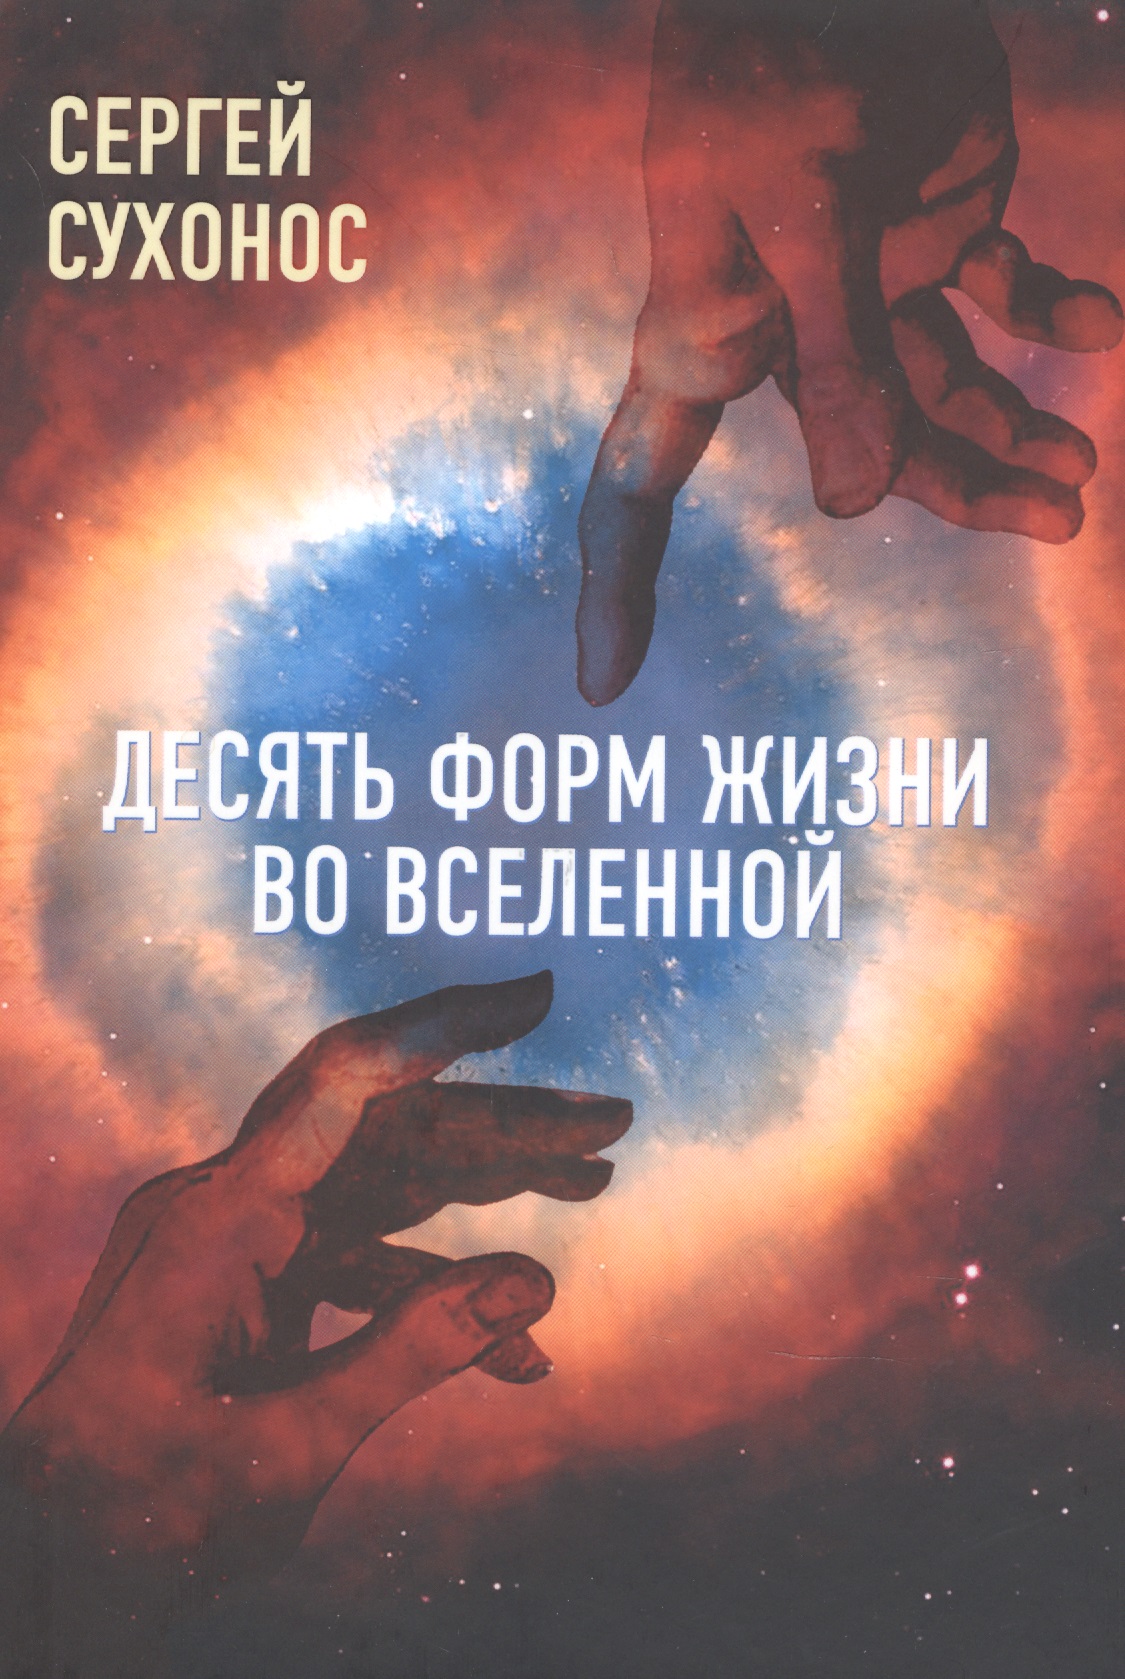 Сухонос Сергей  Иванович - Десять форм жизни во Вселенной